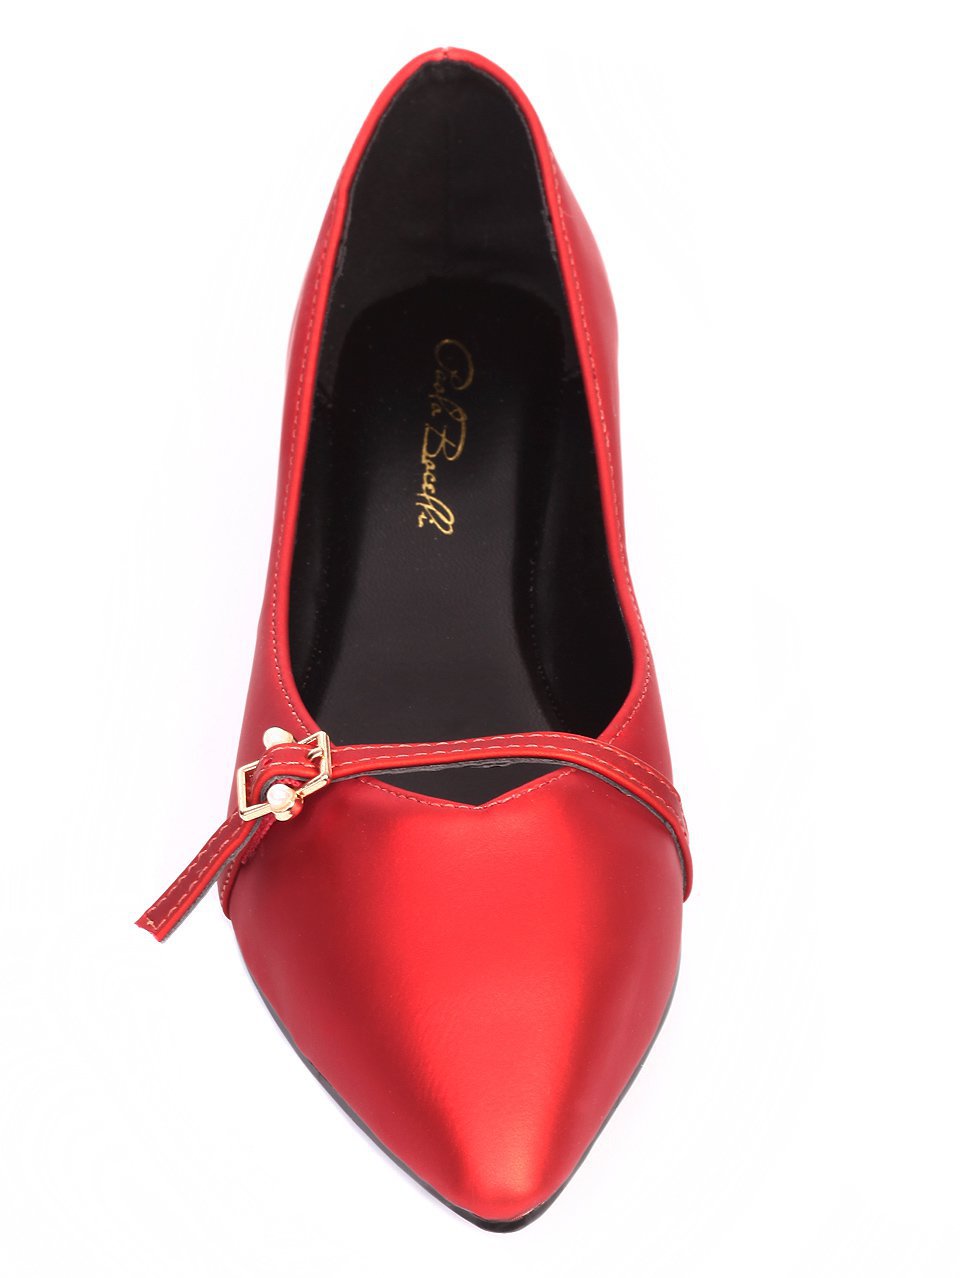 Ежедневни дамски обувки в червено 3B-17247 red